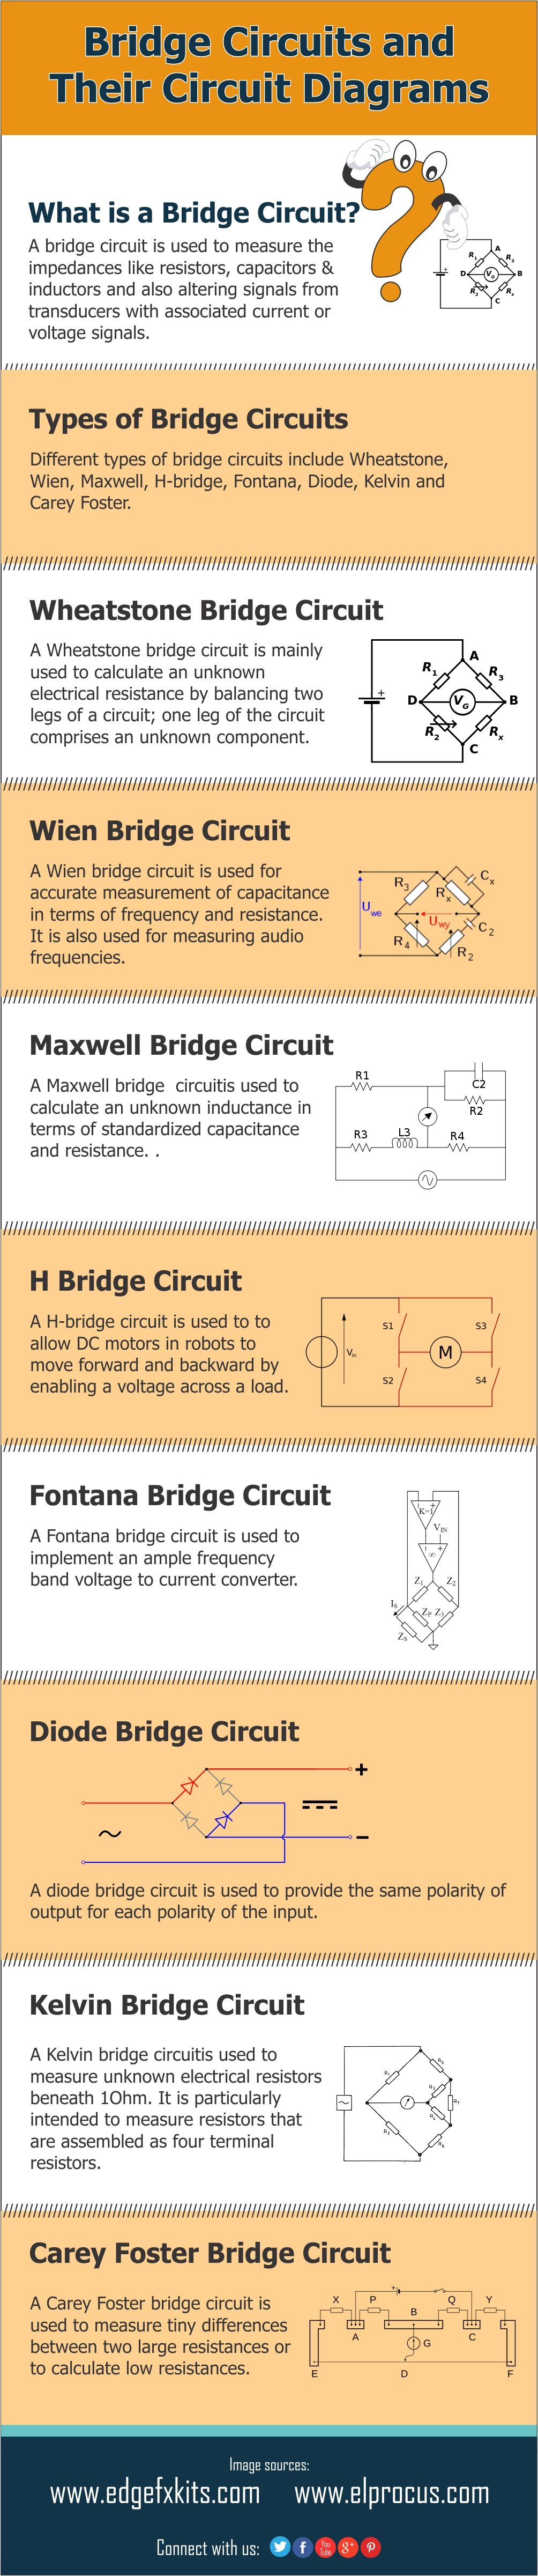 Infografia: diferents tipus de circuits de ponts i diagrames de circuits